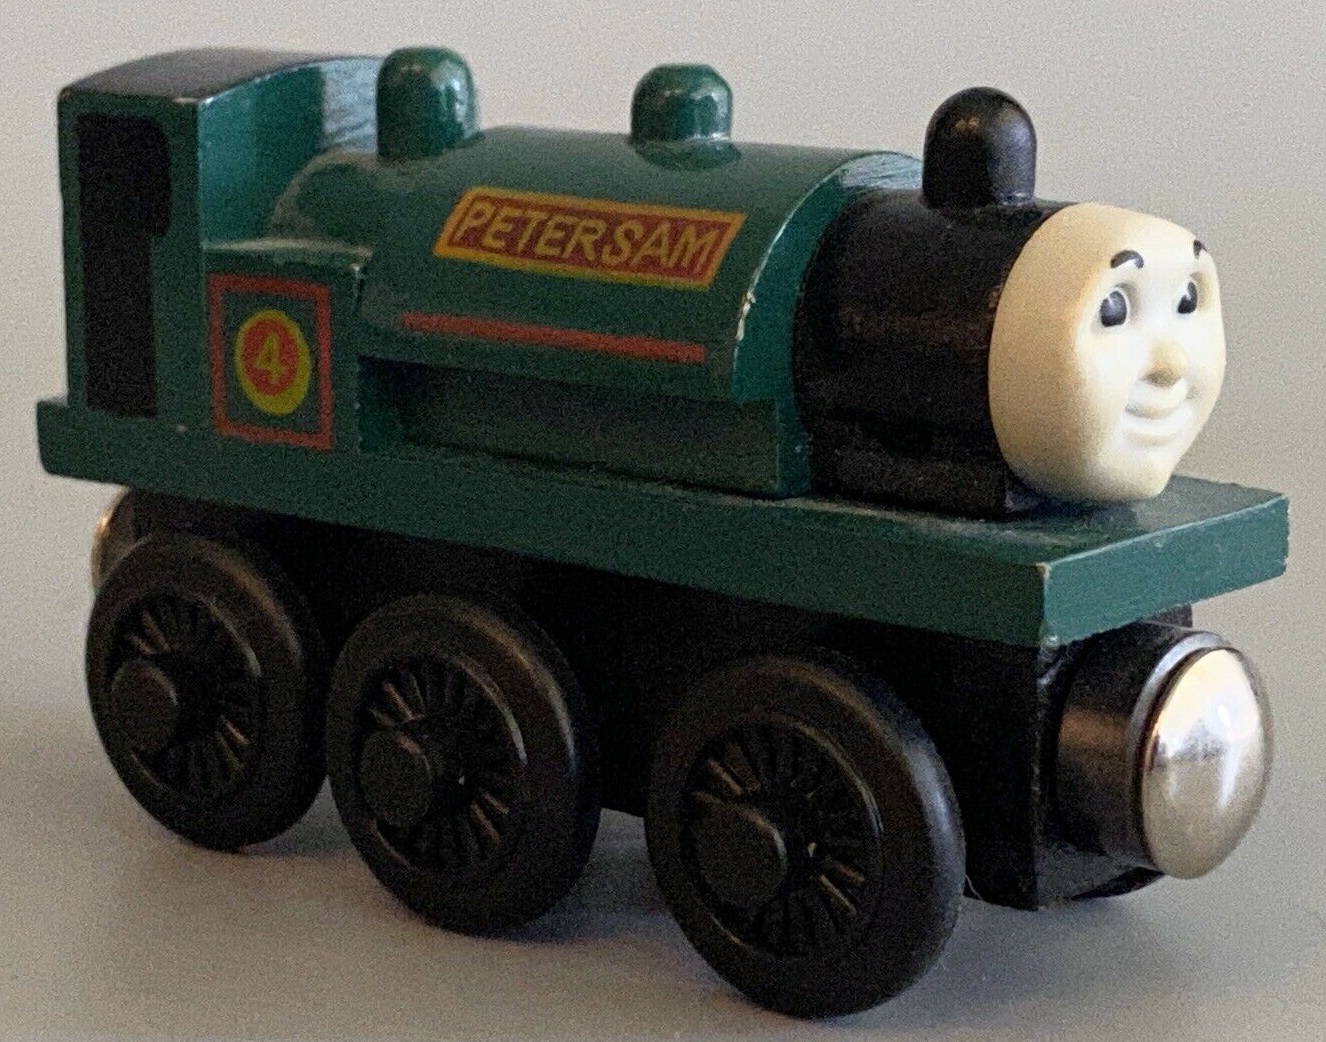 peter sam wooden railway